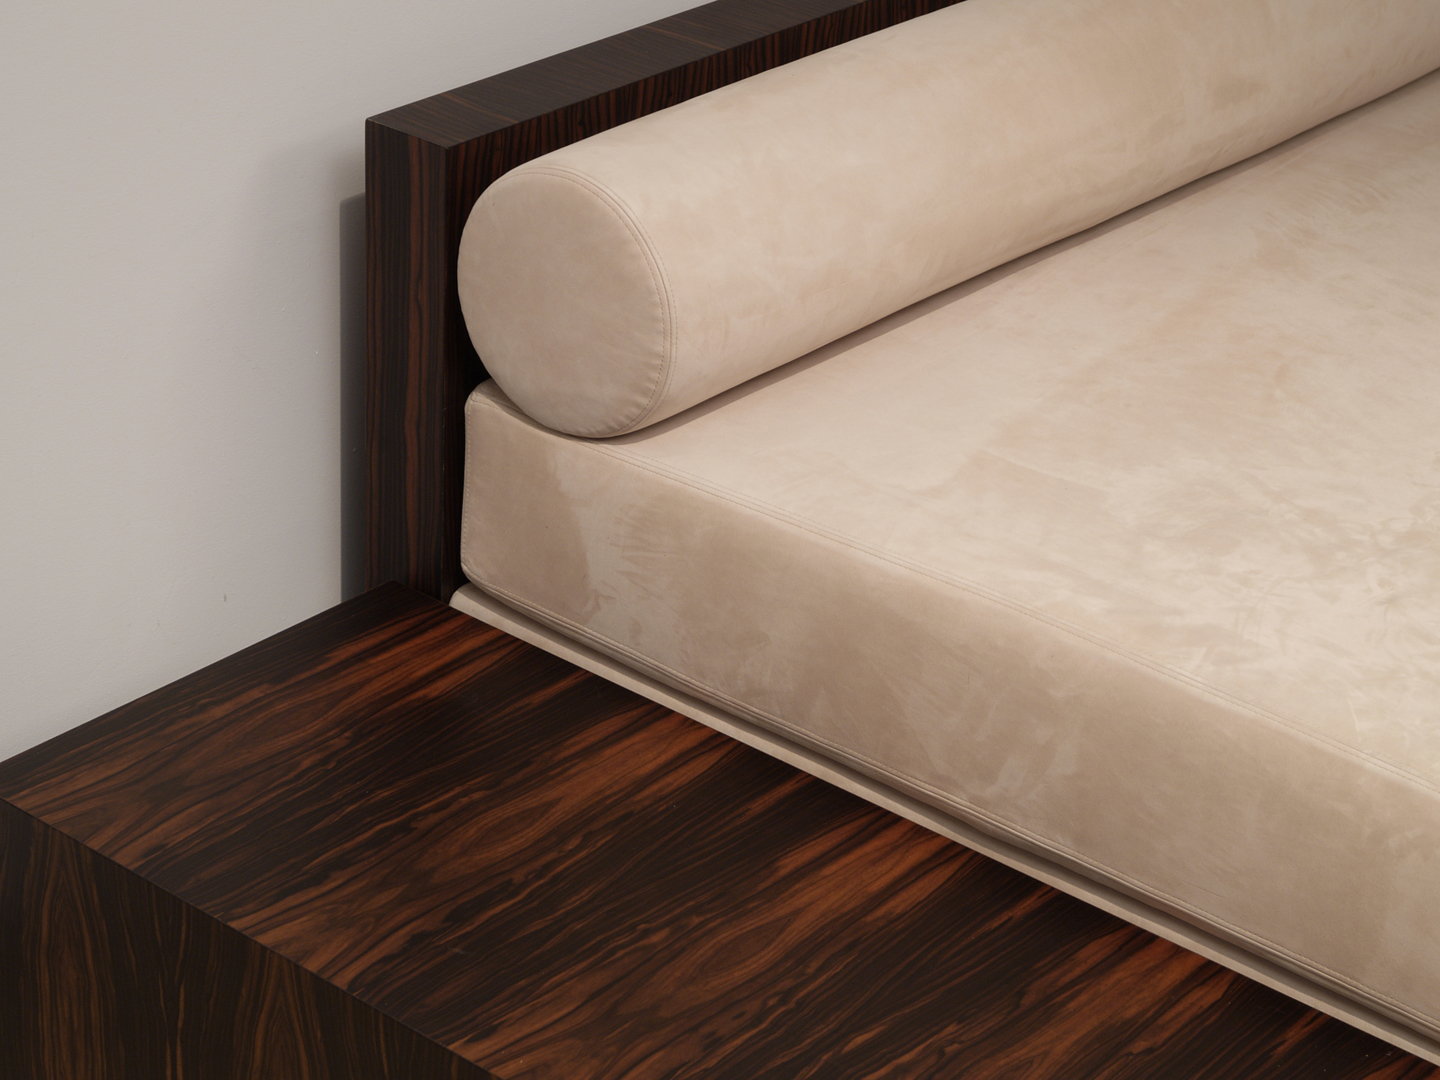 Strato_design_bespoke-sofa_Ebony-wood_leather_01